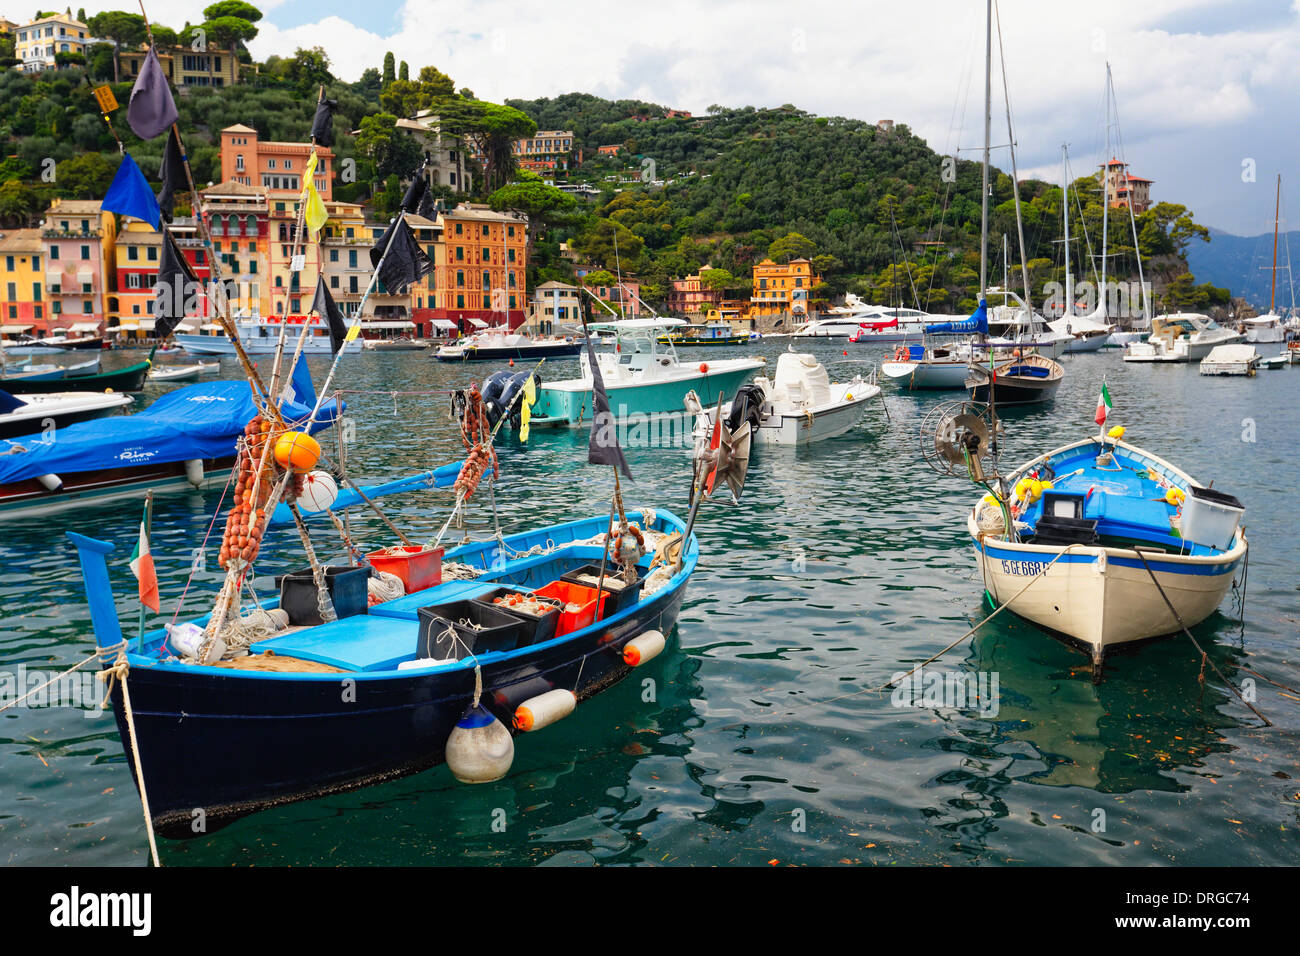 Les petits bateaux typiques de la Ligurie dans le port, Portofino, ligurie, italie Banque D'Images